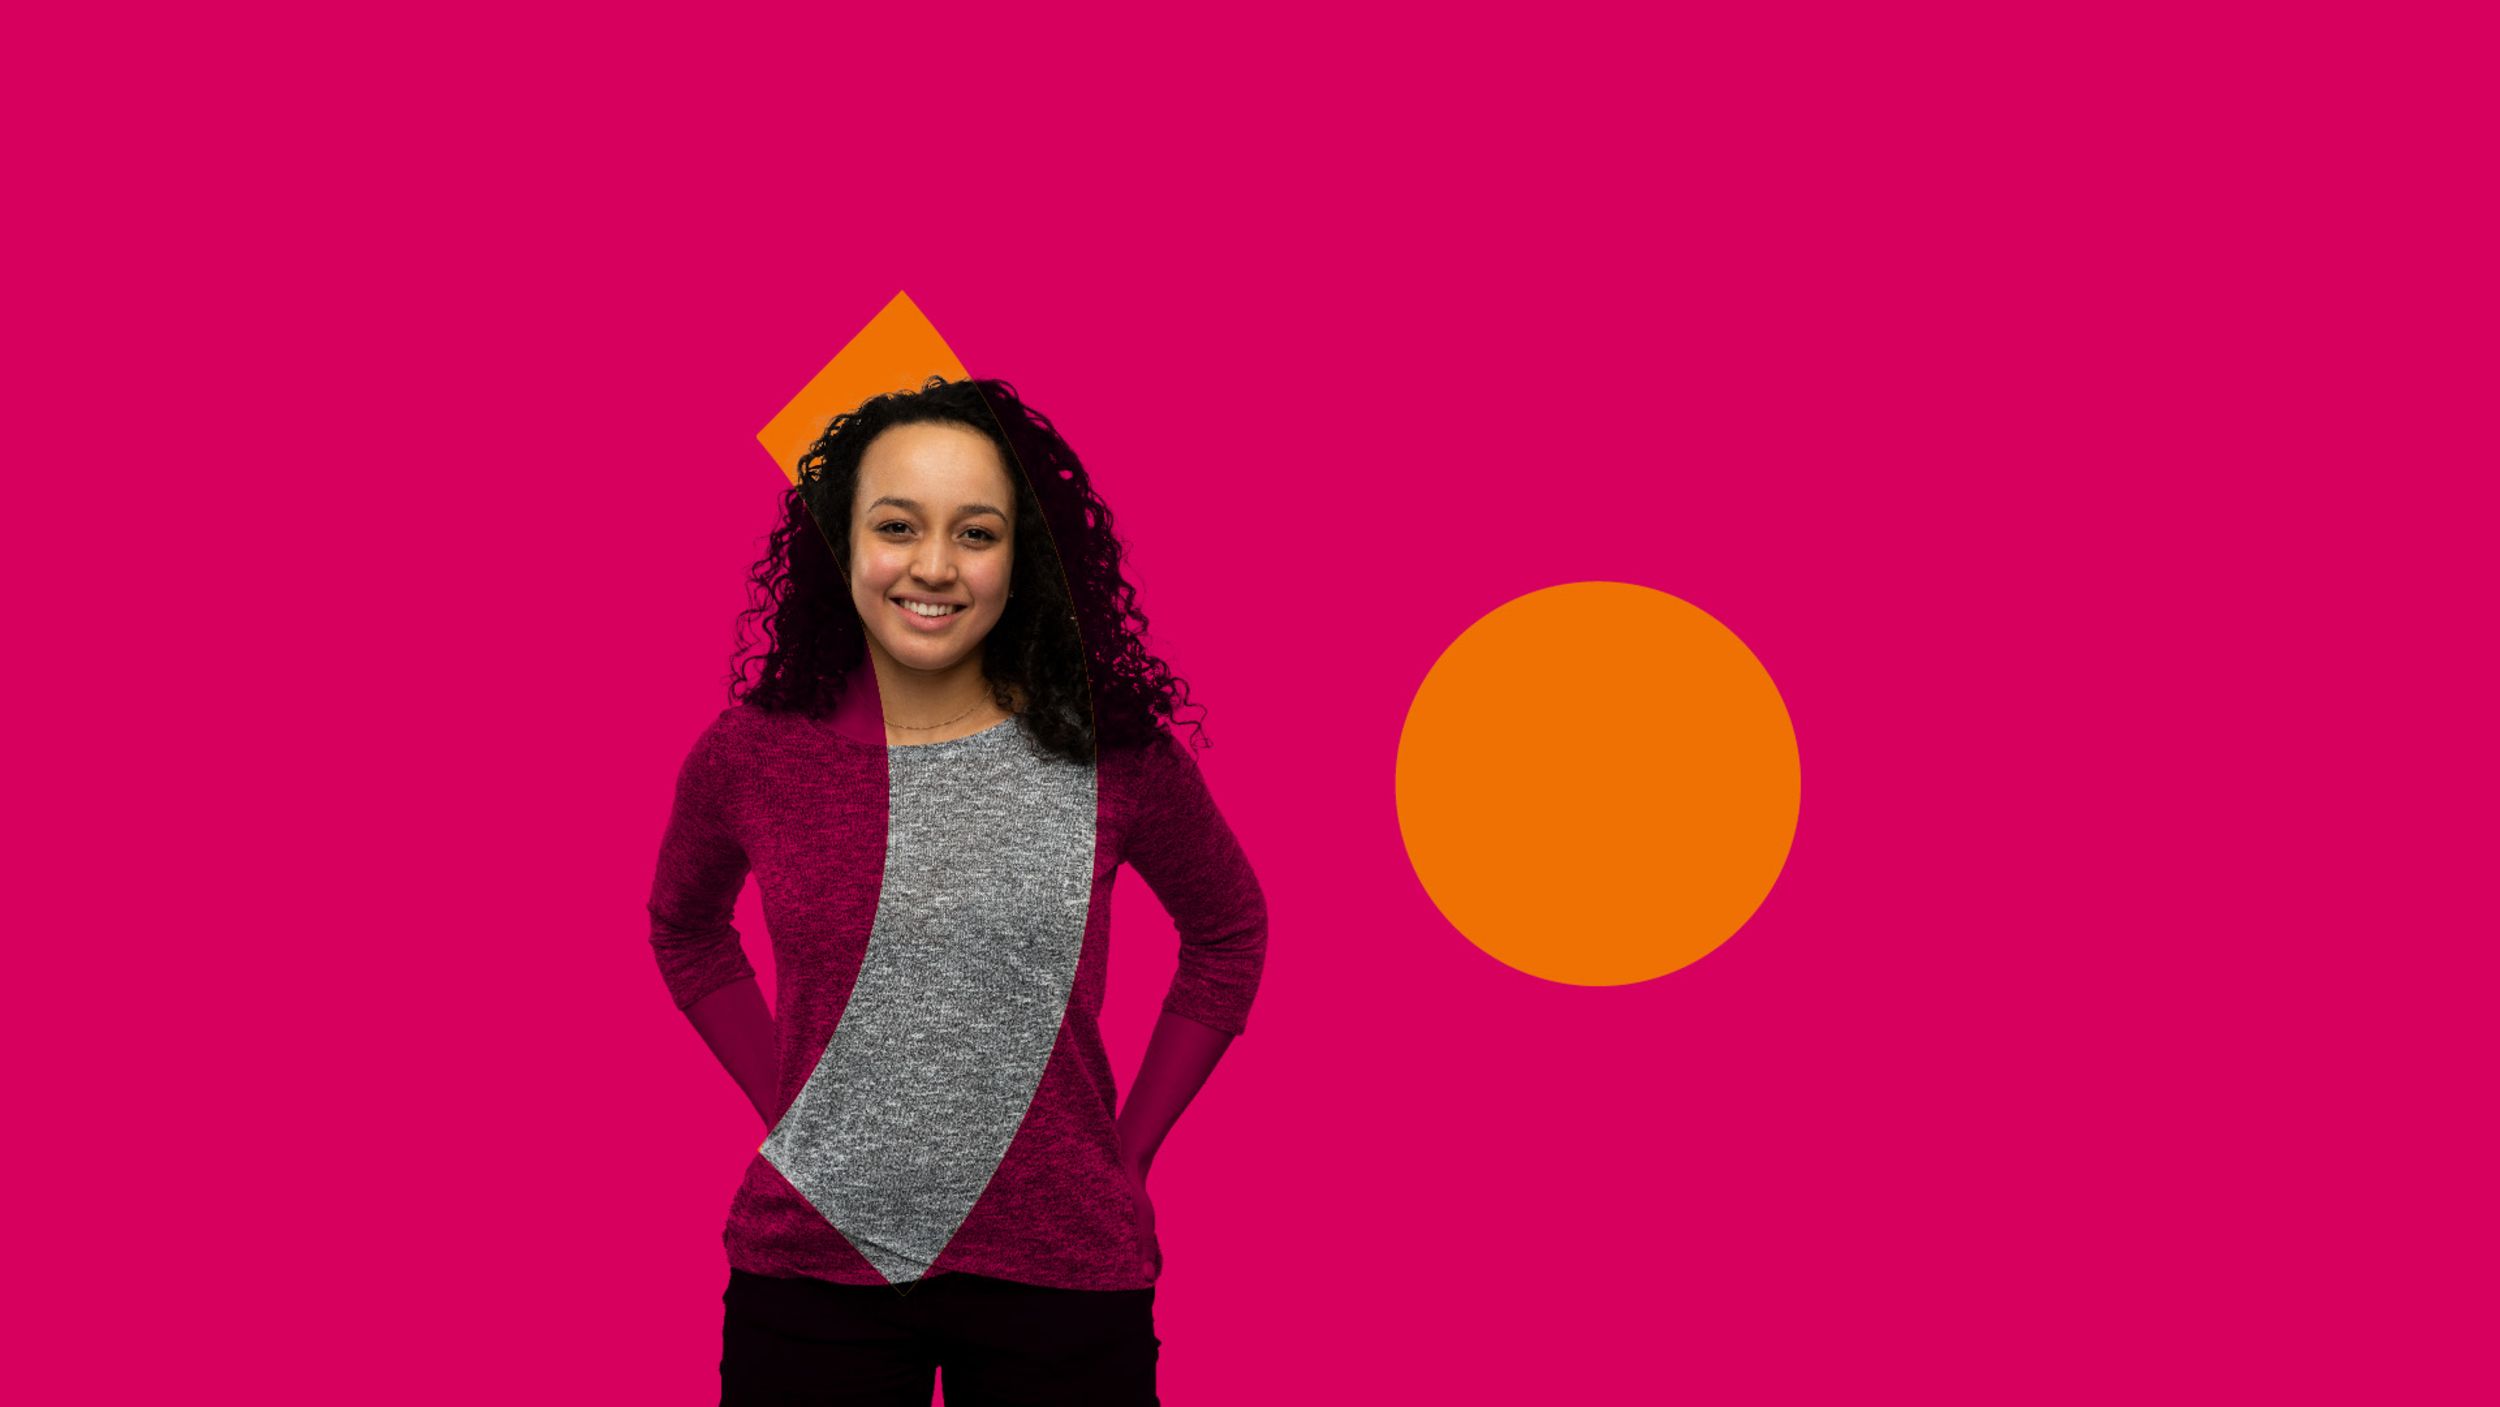 Portrait einer dualen Studentin des Pfalzklinikums auf farbigem Hintergrund mit Zielgruppen-Slogan